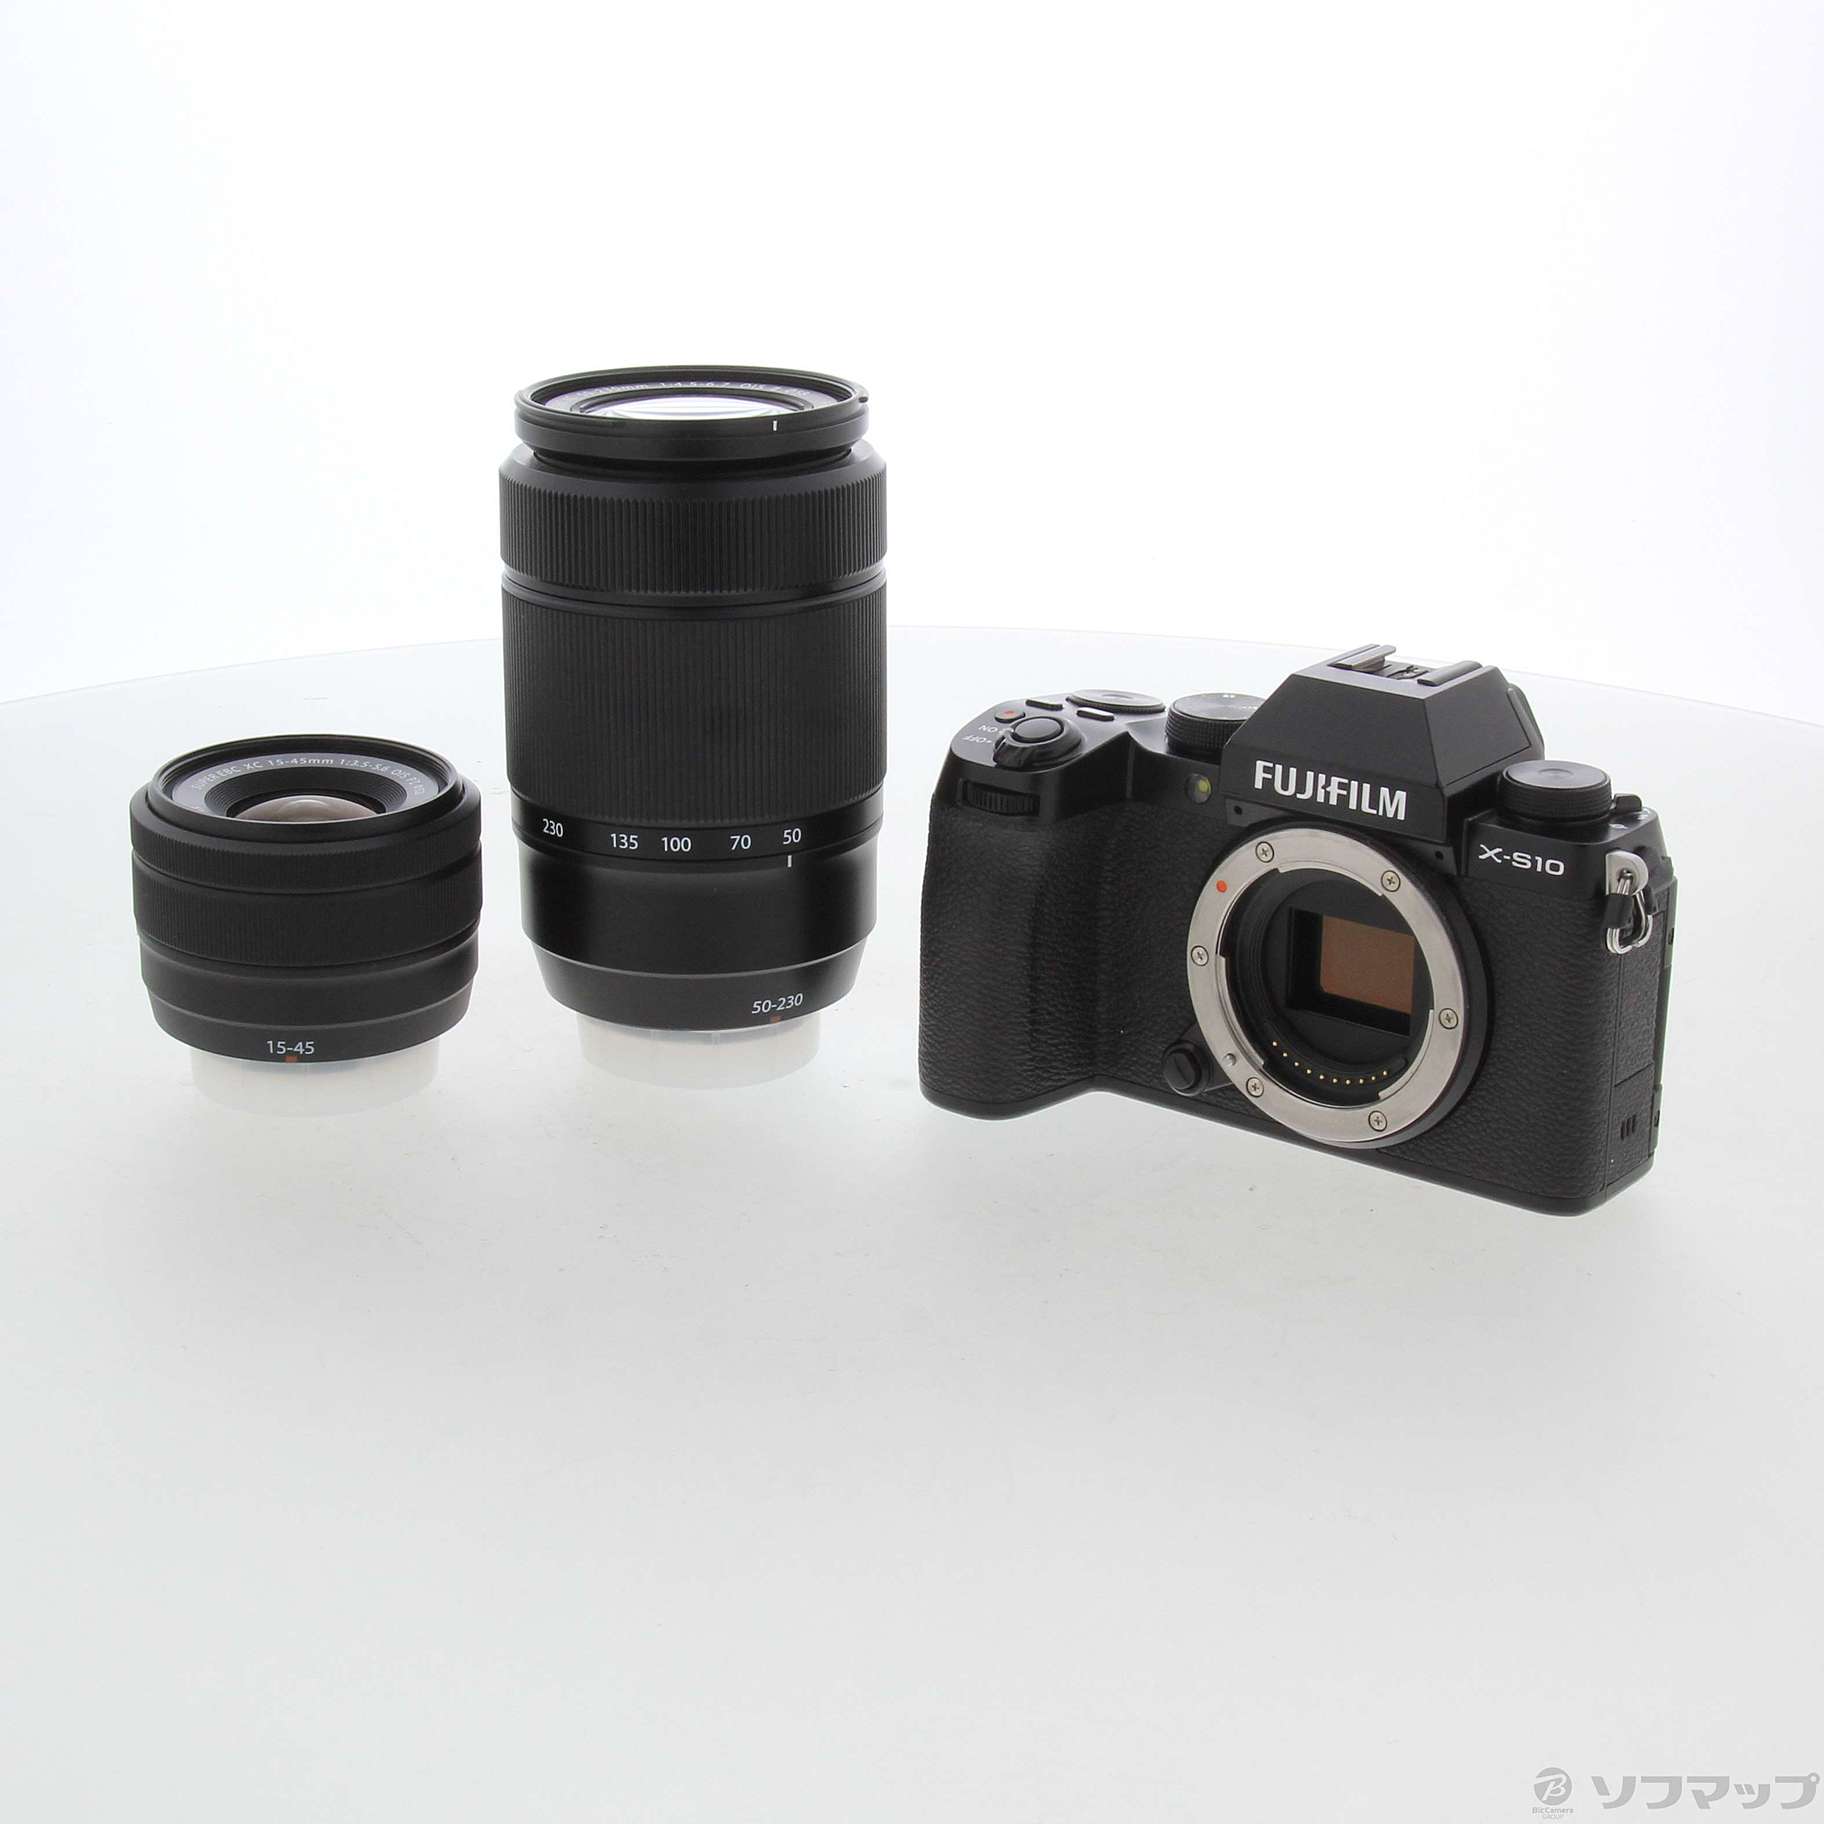 XS10 FUJIFILM X-S10ダブルズームレンズキット 富士フイルム - カメラ